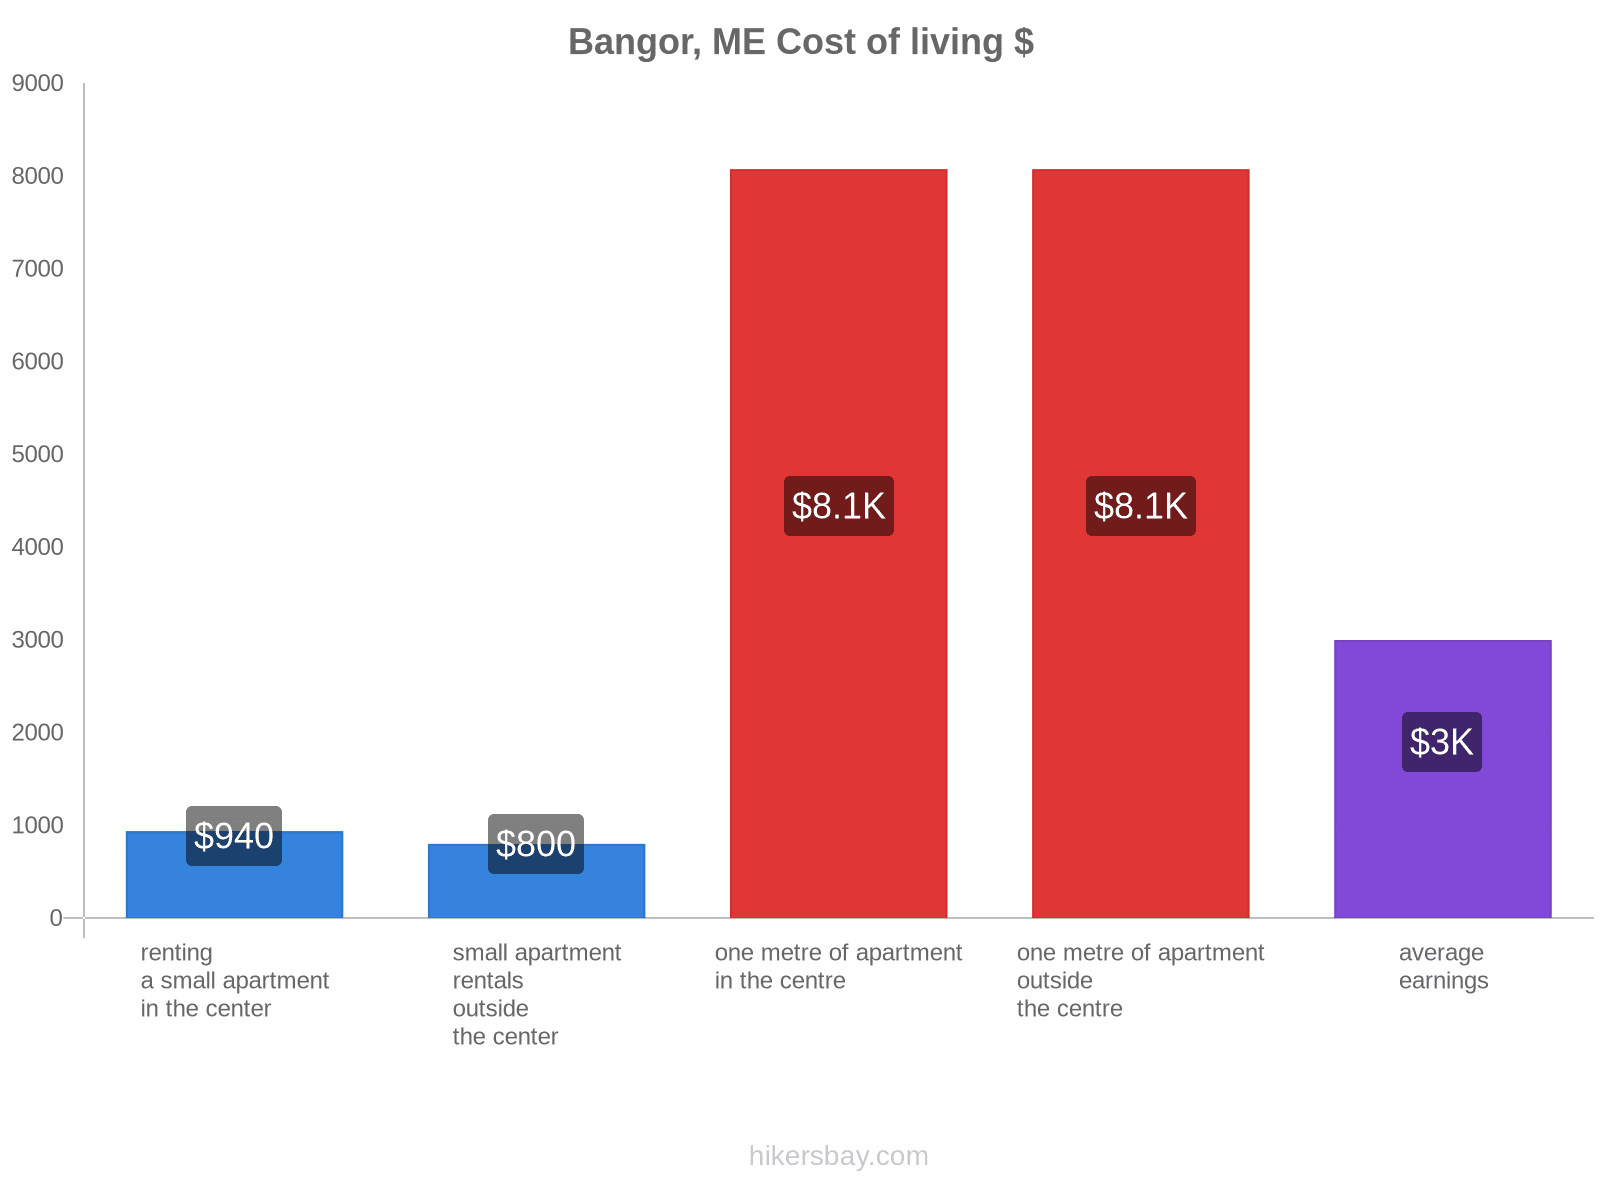 Bangor, ME cost of living hikersbay.com